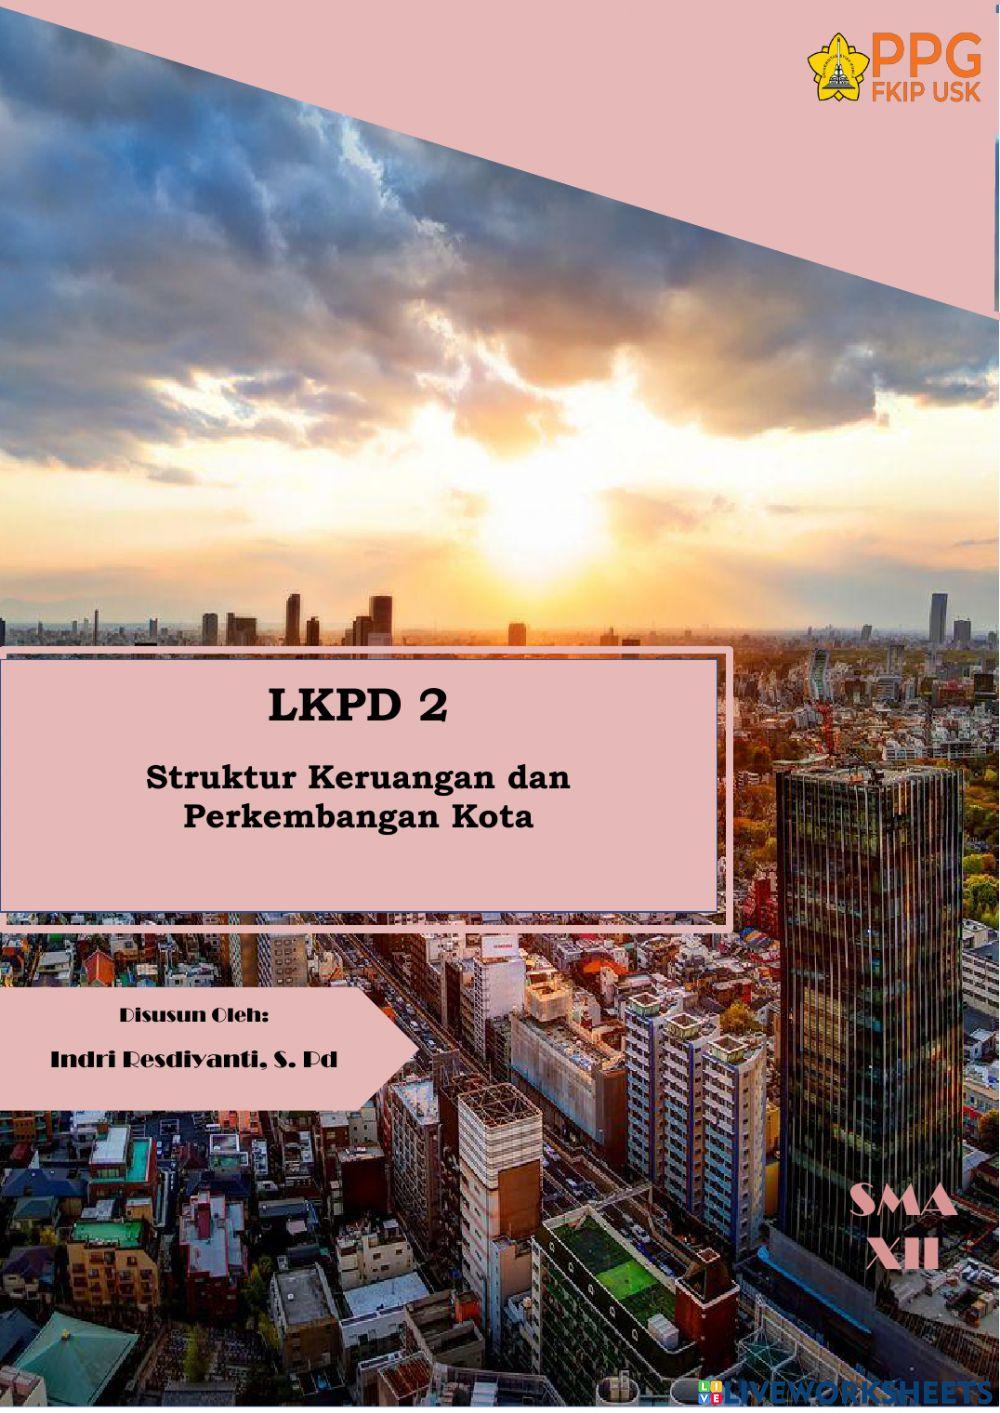 LKPD 2 Struktur Keruangan dan Perkembangan Kota